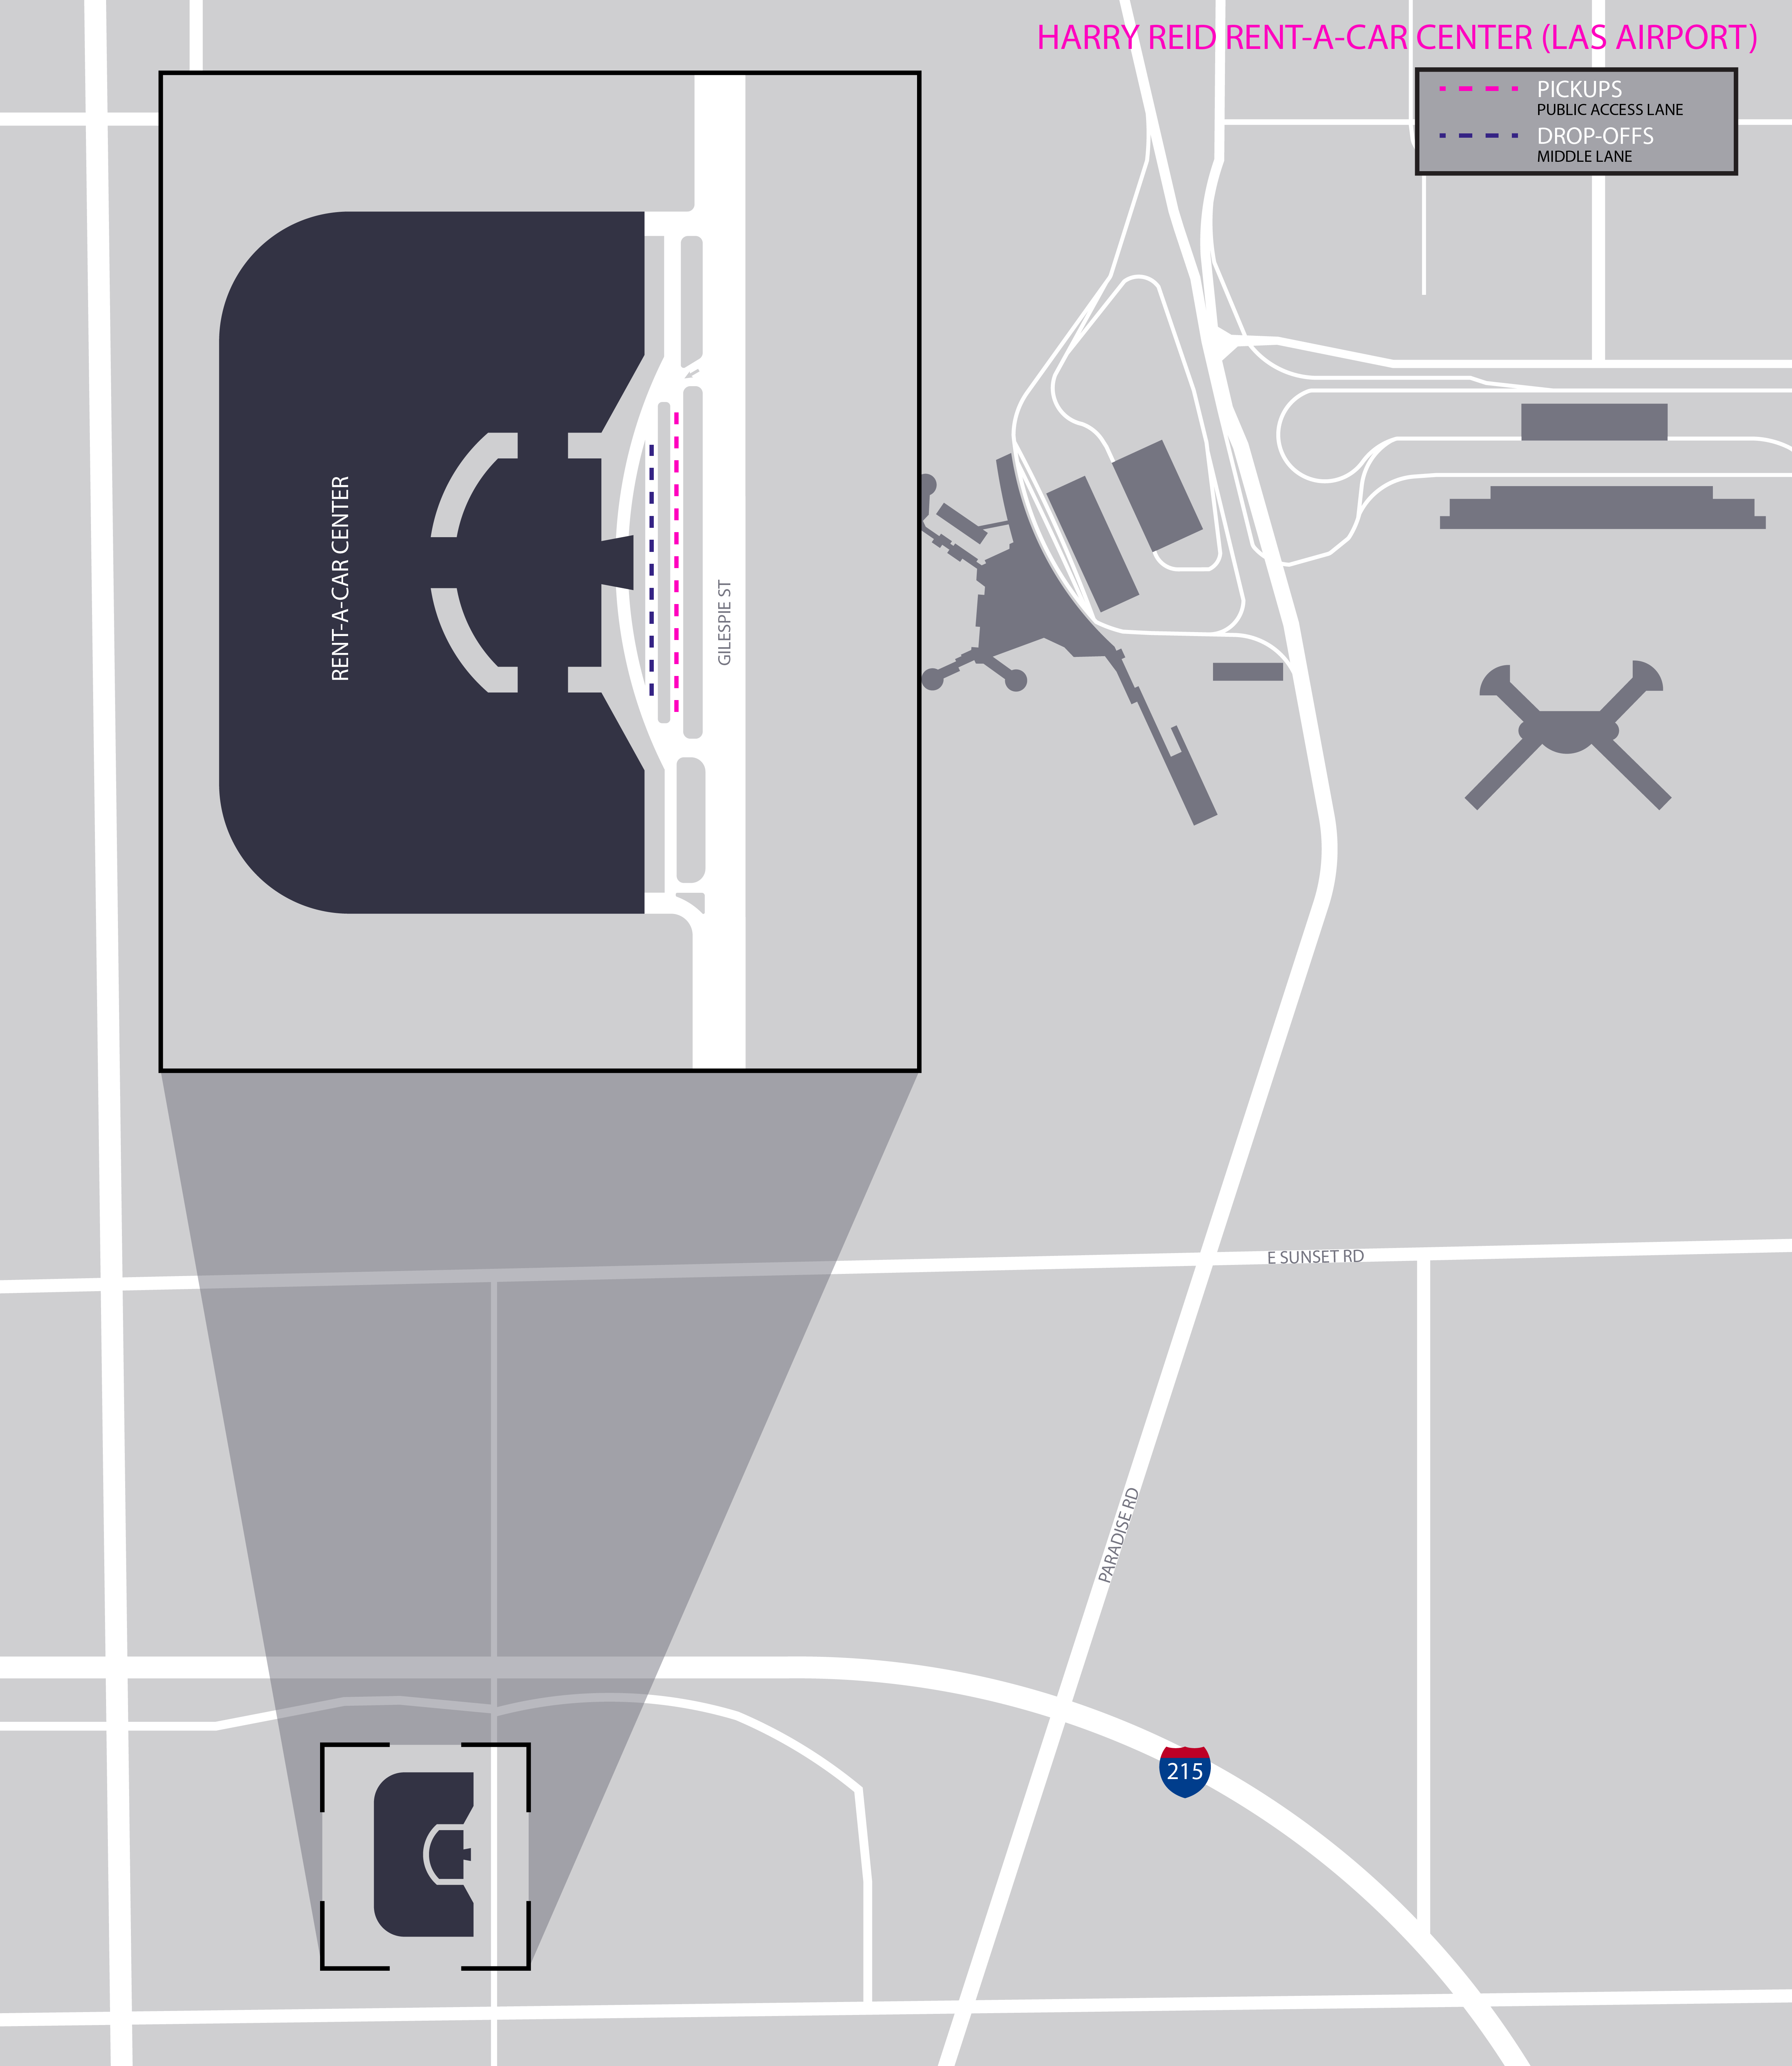 Plan du centre de location de voitures de l'aéroport international Harry Reid (LAS).